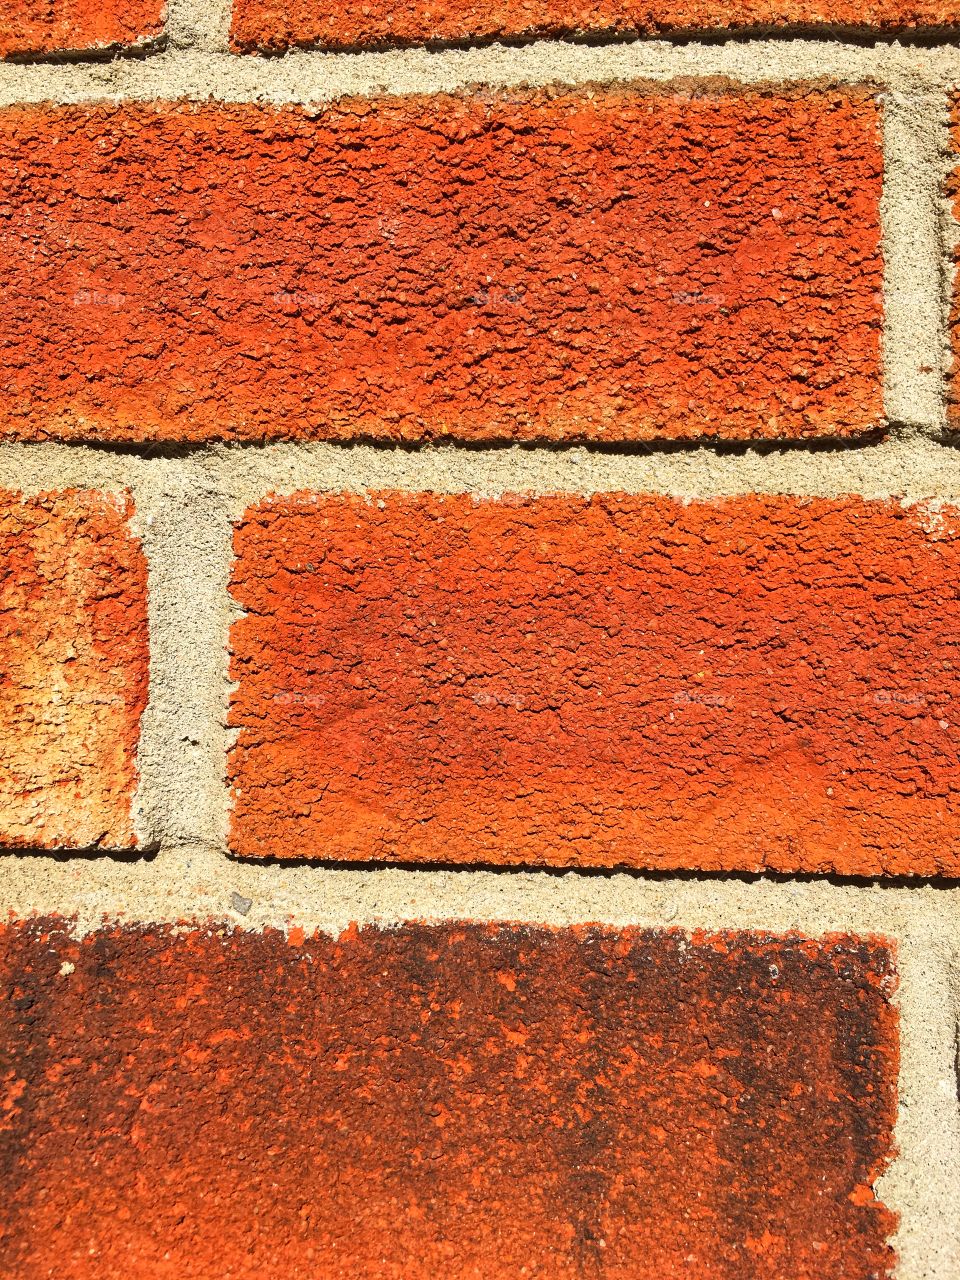 Colourful brick wall up close